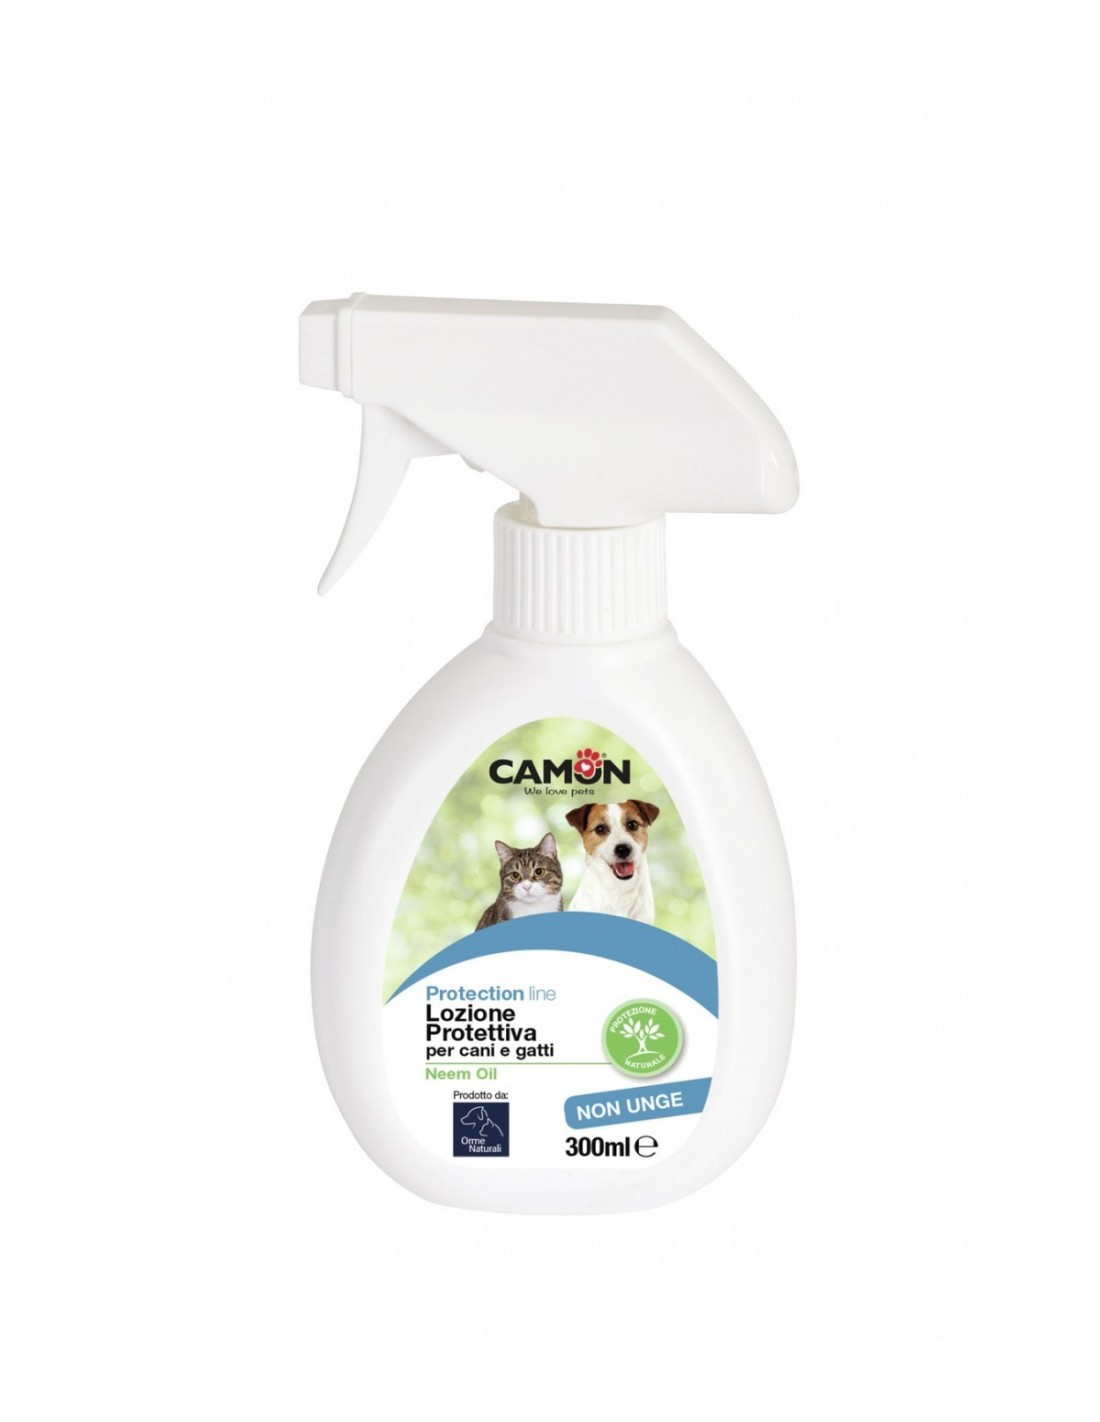 ᐅ Spray Repellente Naturale all'Olio di Neem per Cani e Gatti